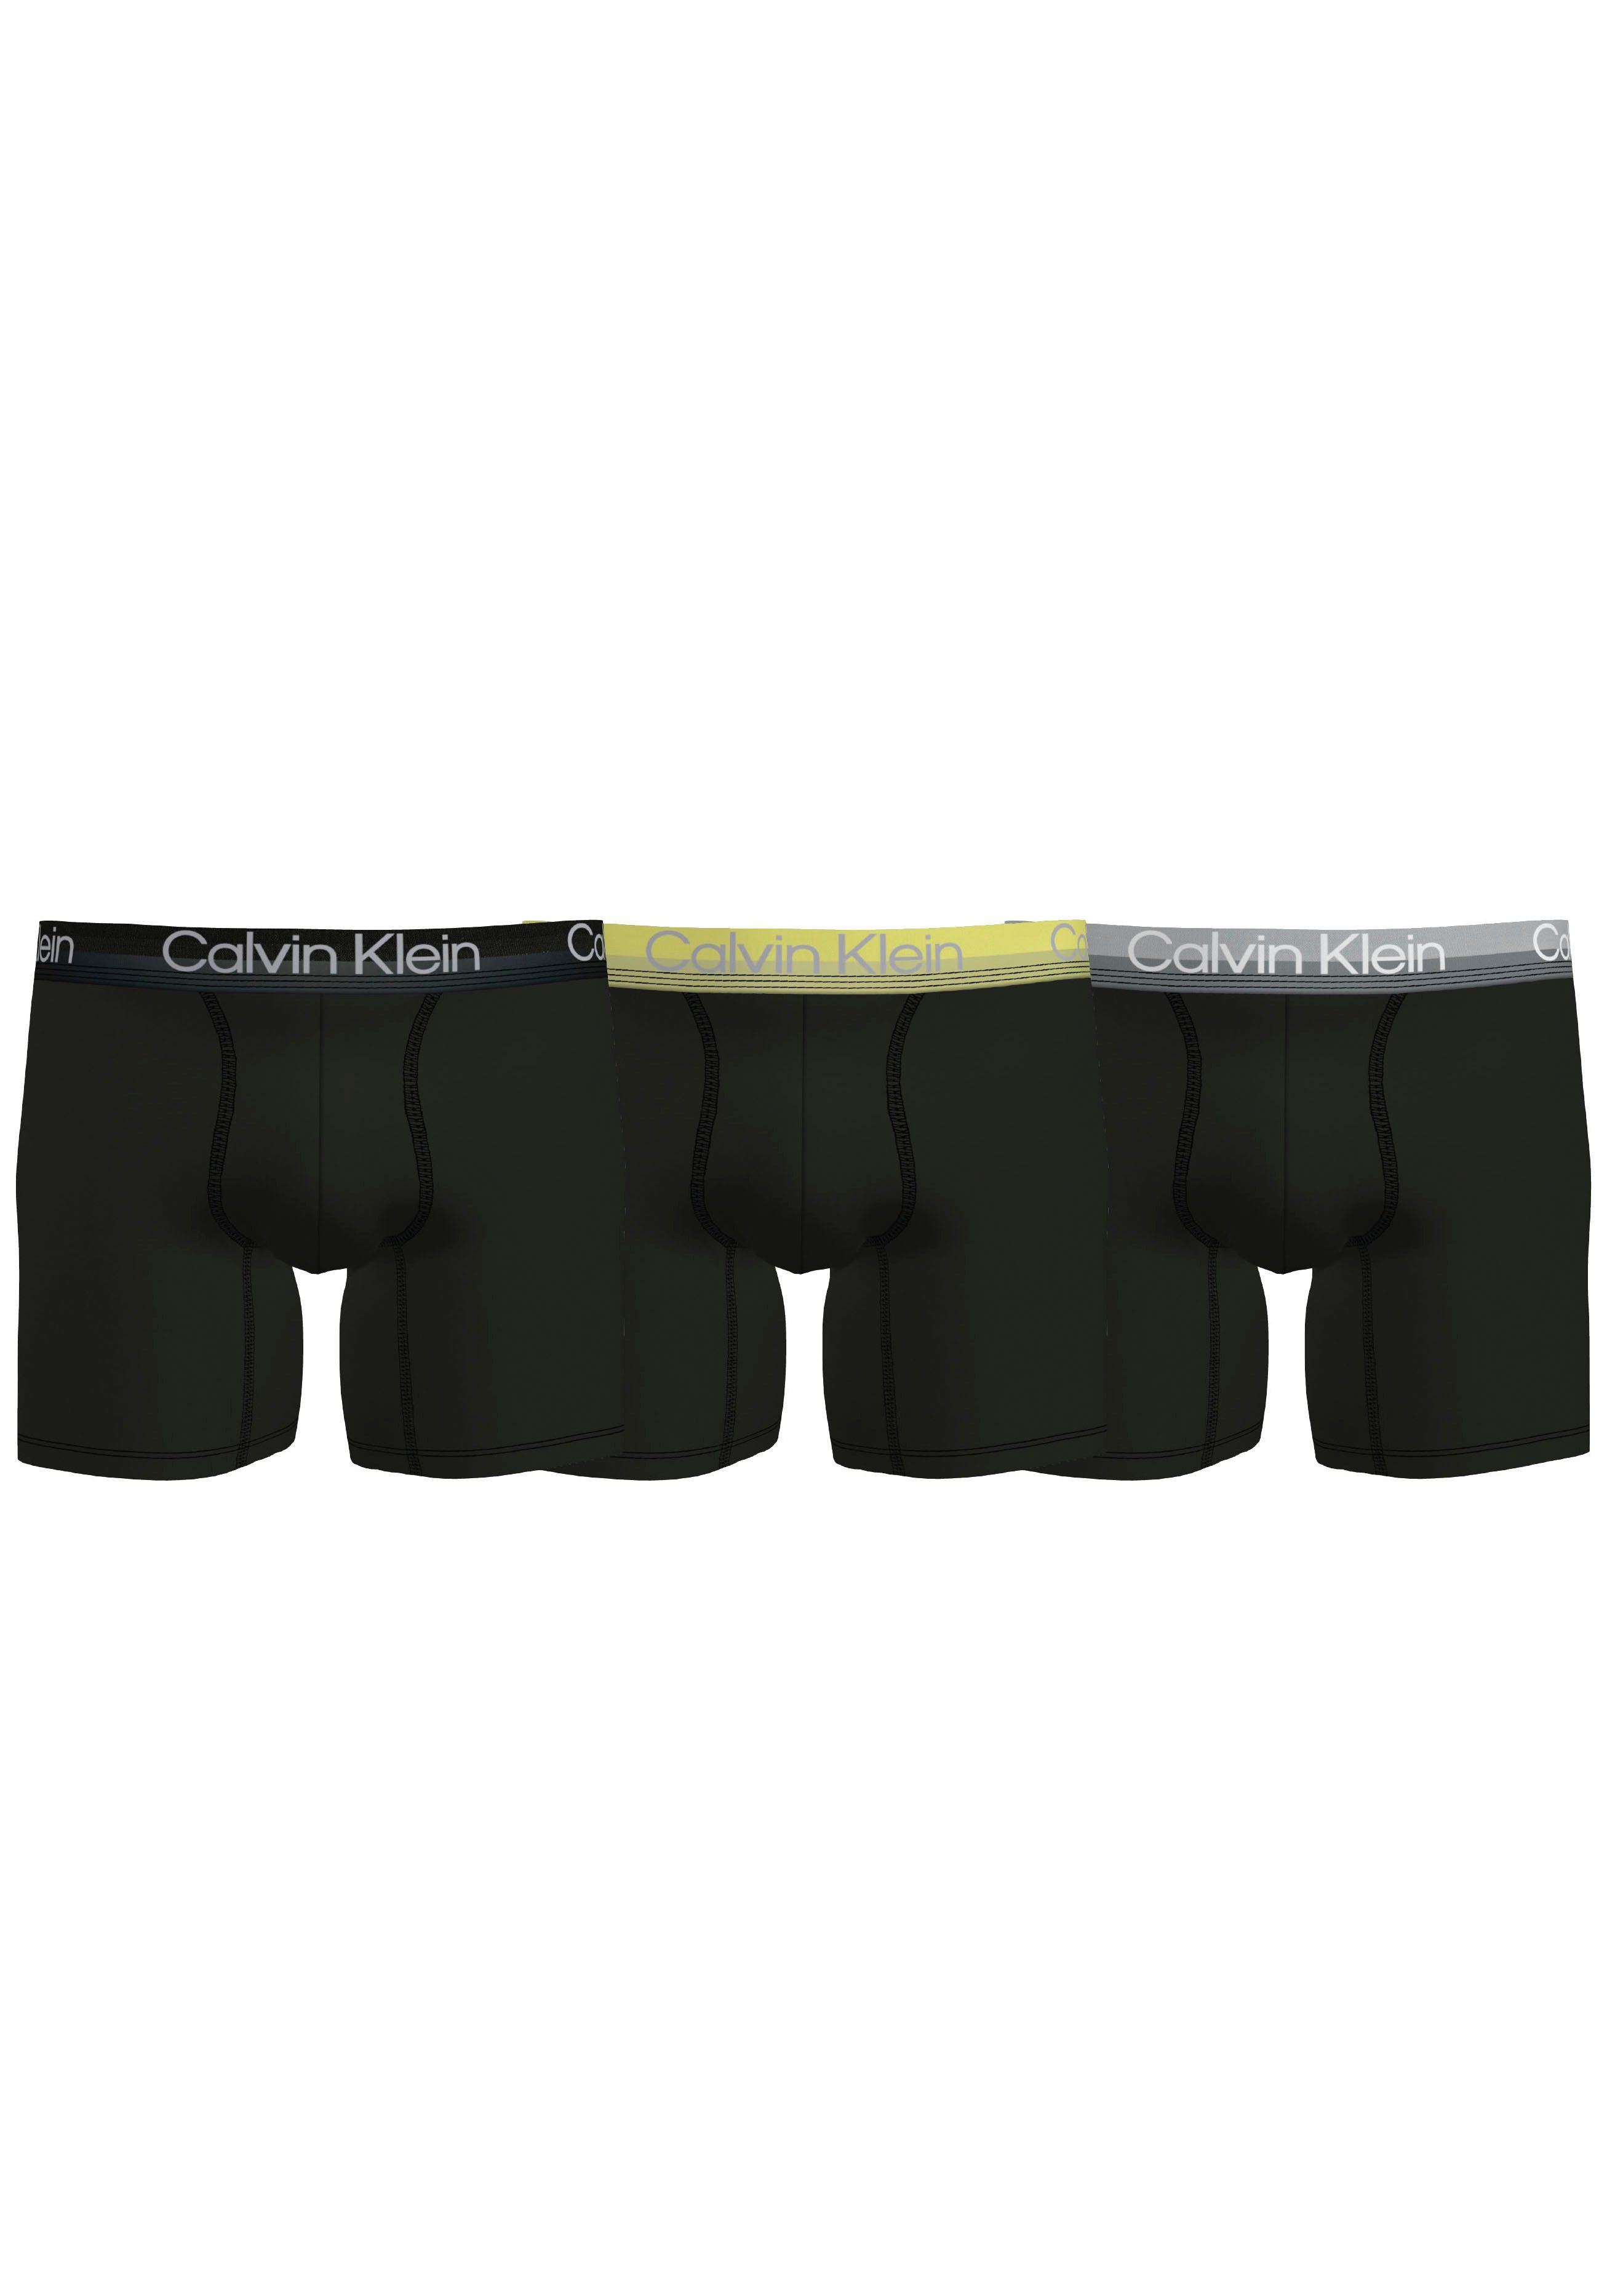 Wäsche/Bademode Boxershorts Calvin Klein Retro Boxer (3 Stück) mit Overlocknähten an den Teilungsnähten